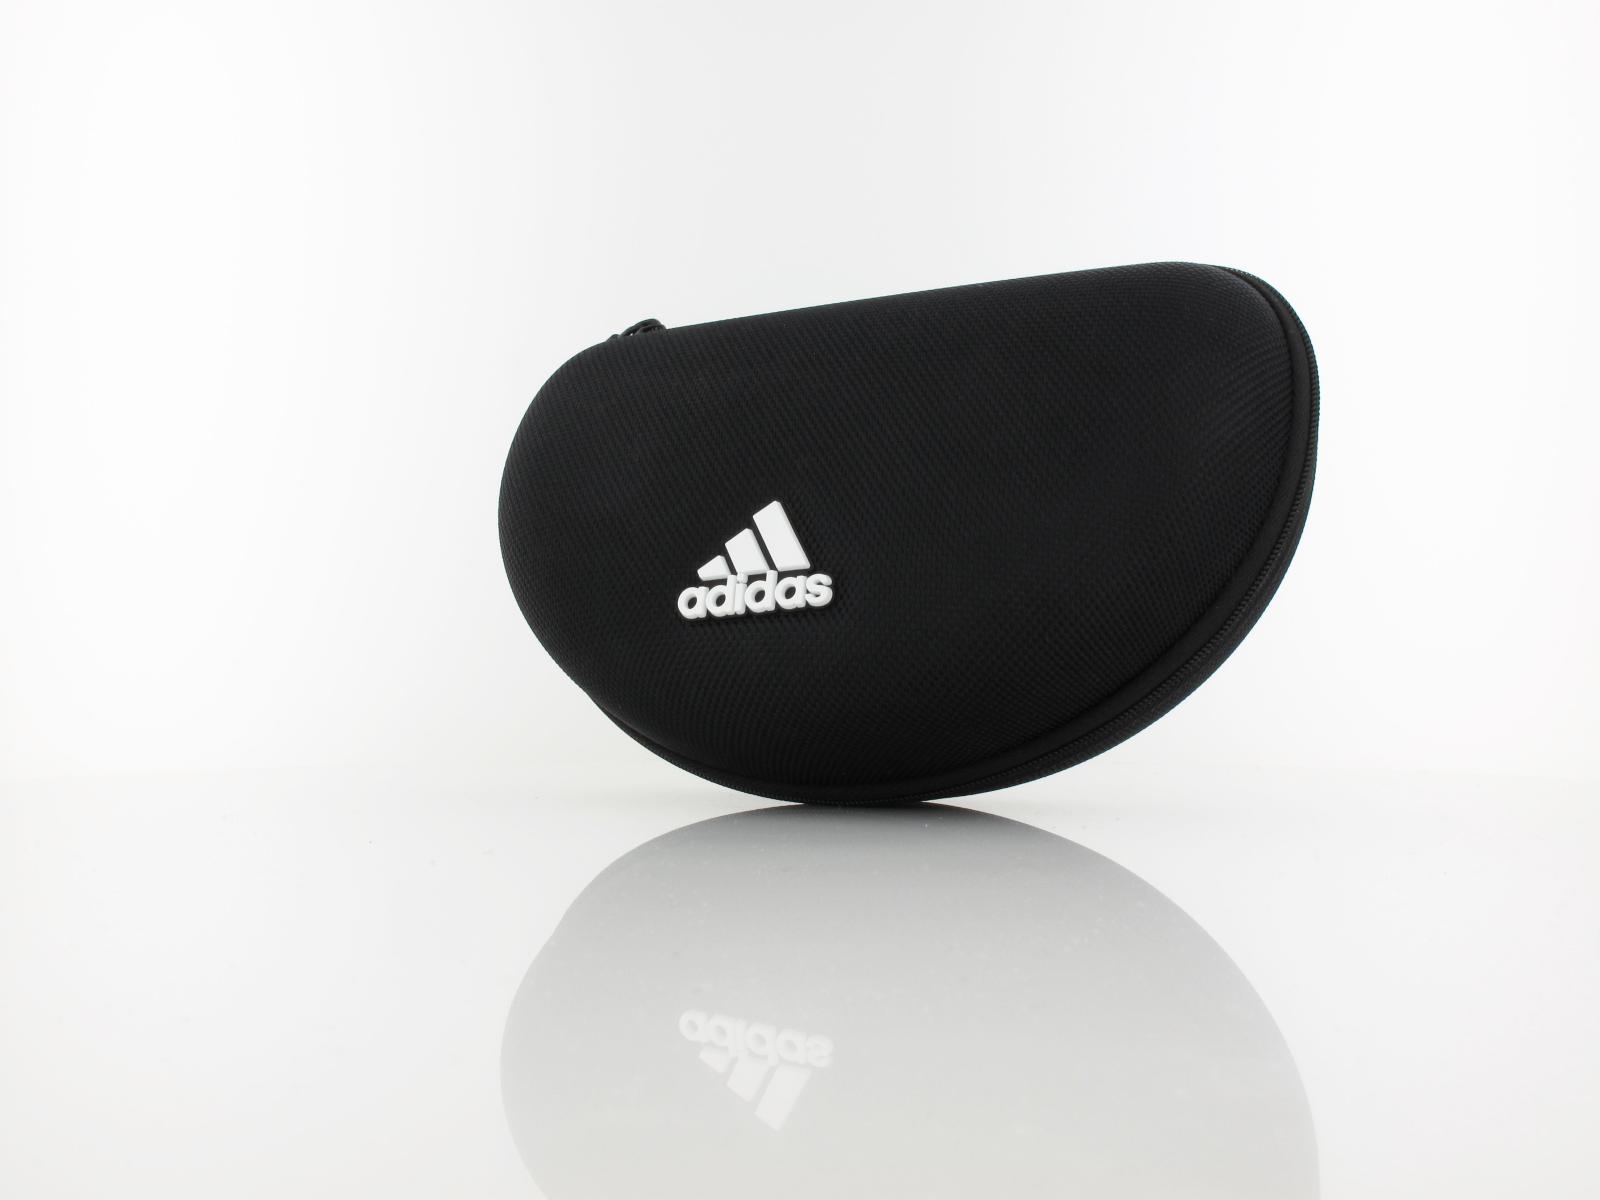 Adidas | SP0016 01C | polished black / grey mirror